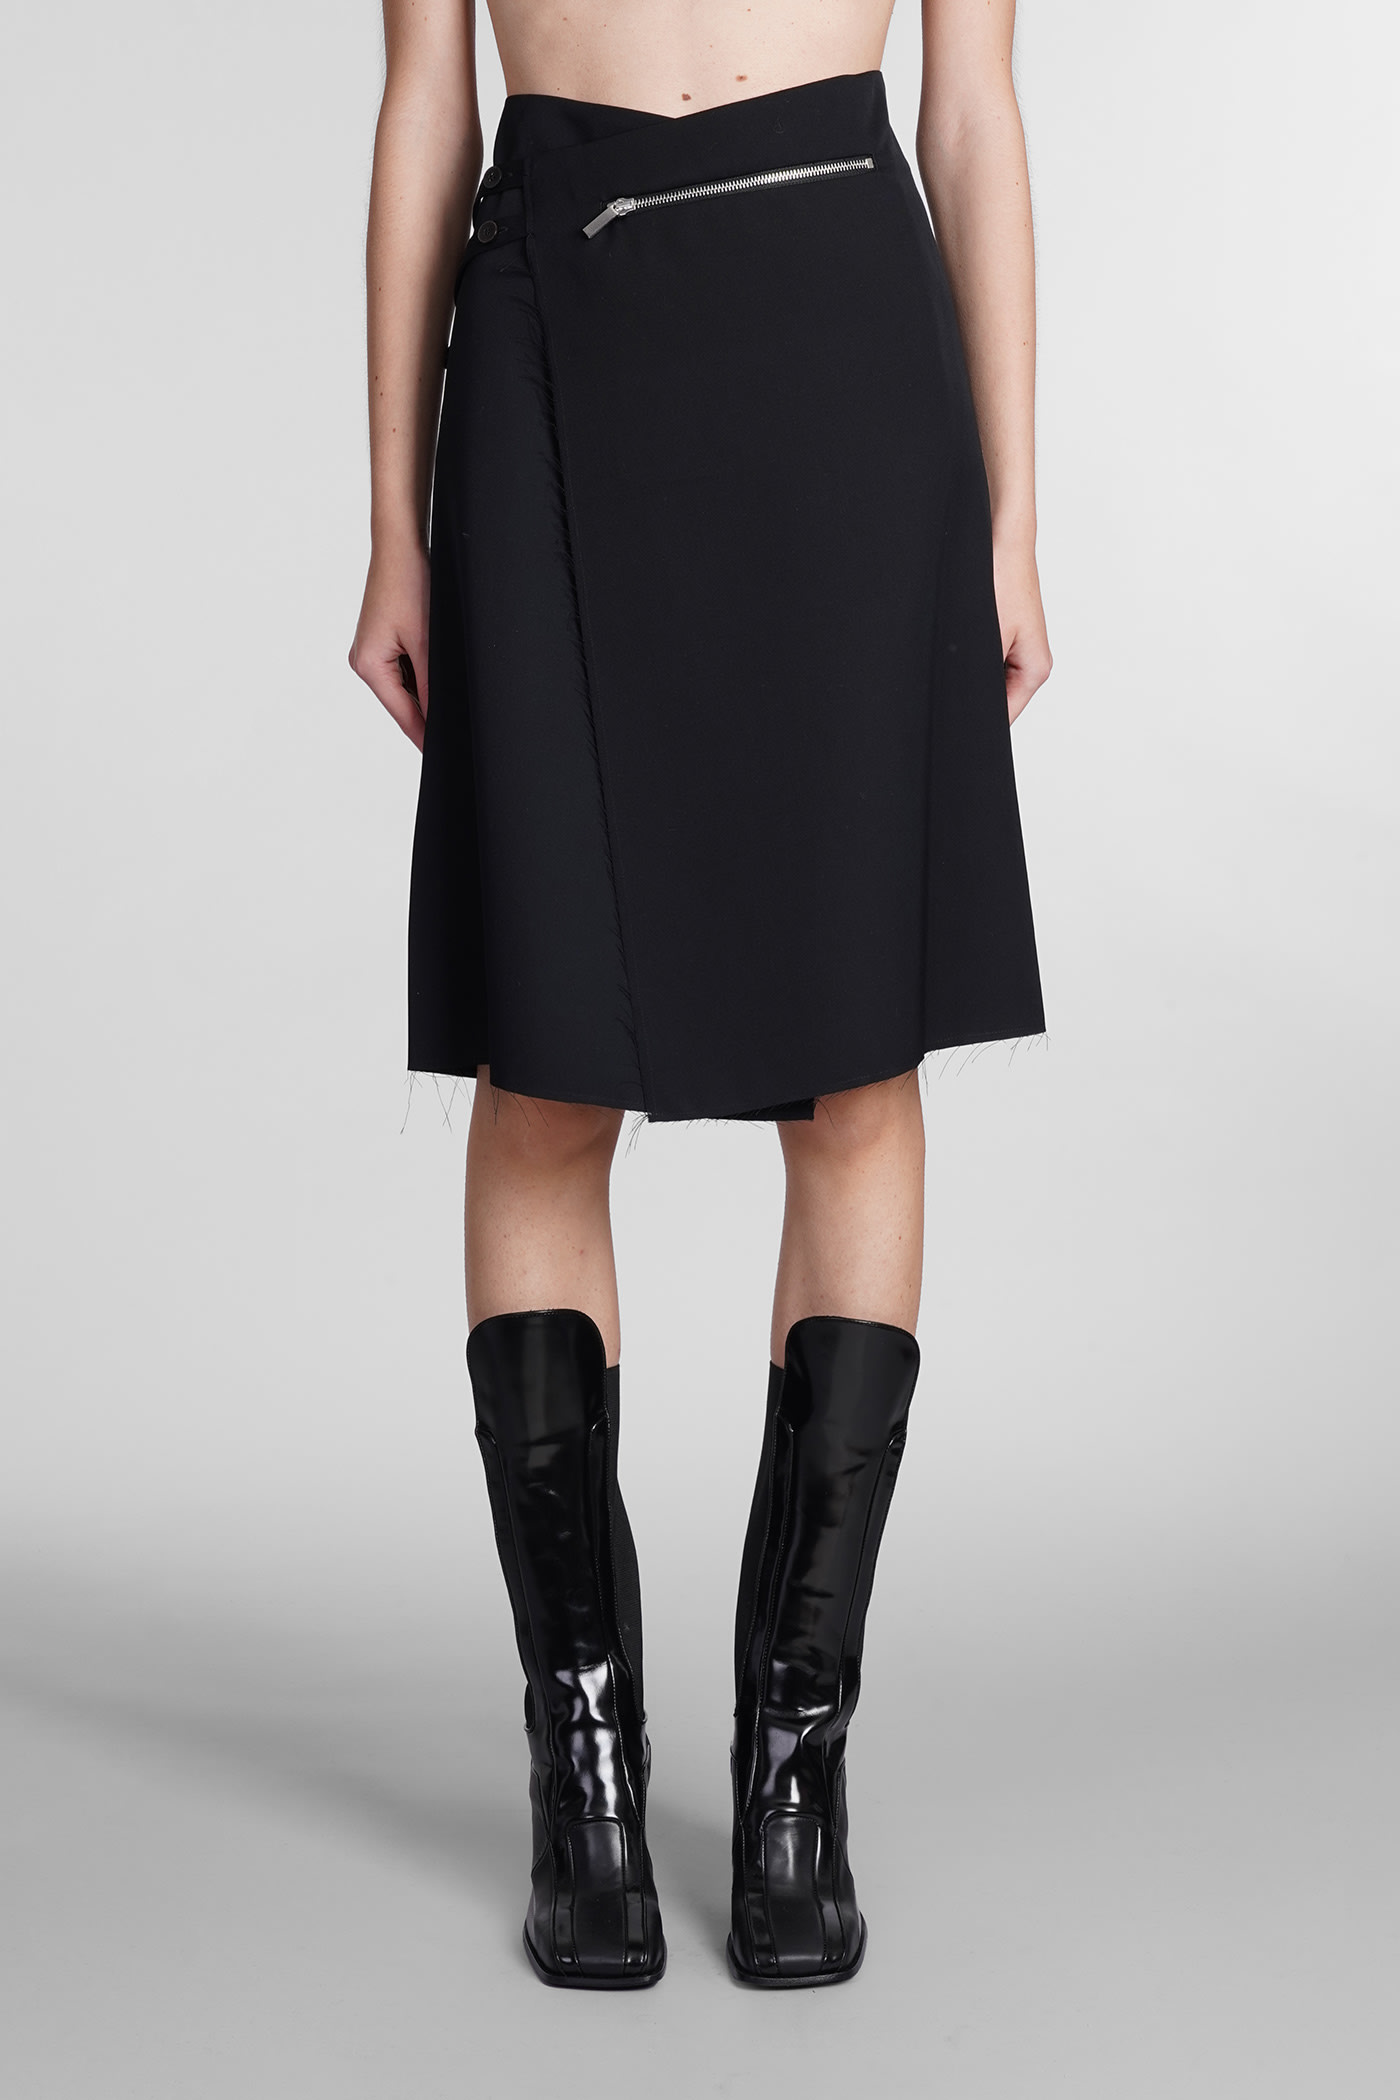 Sapio Skirt In Black Wool